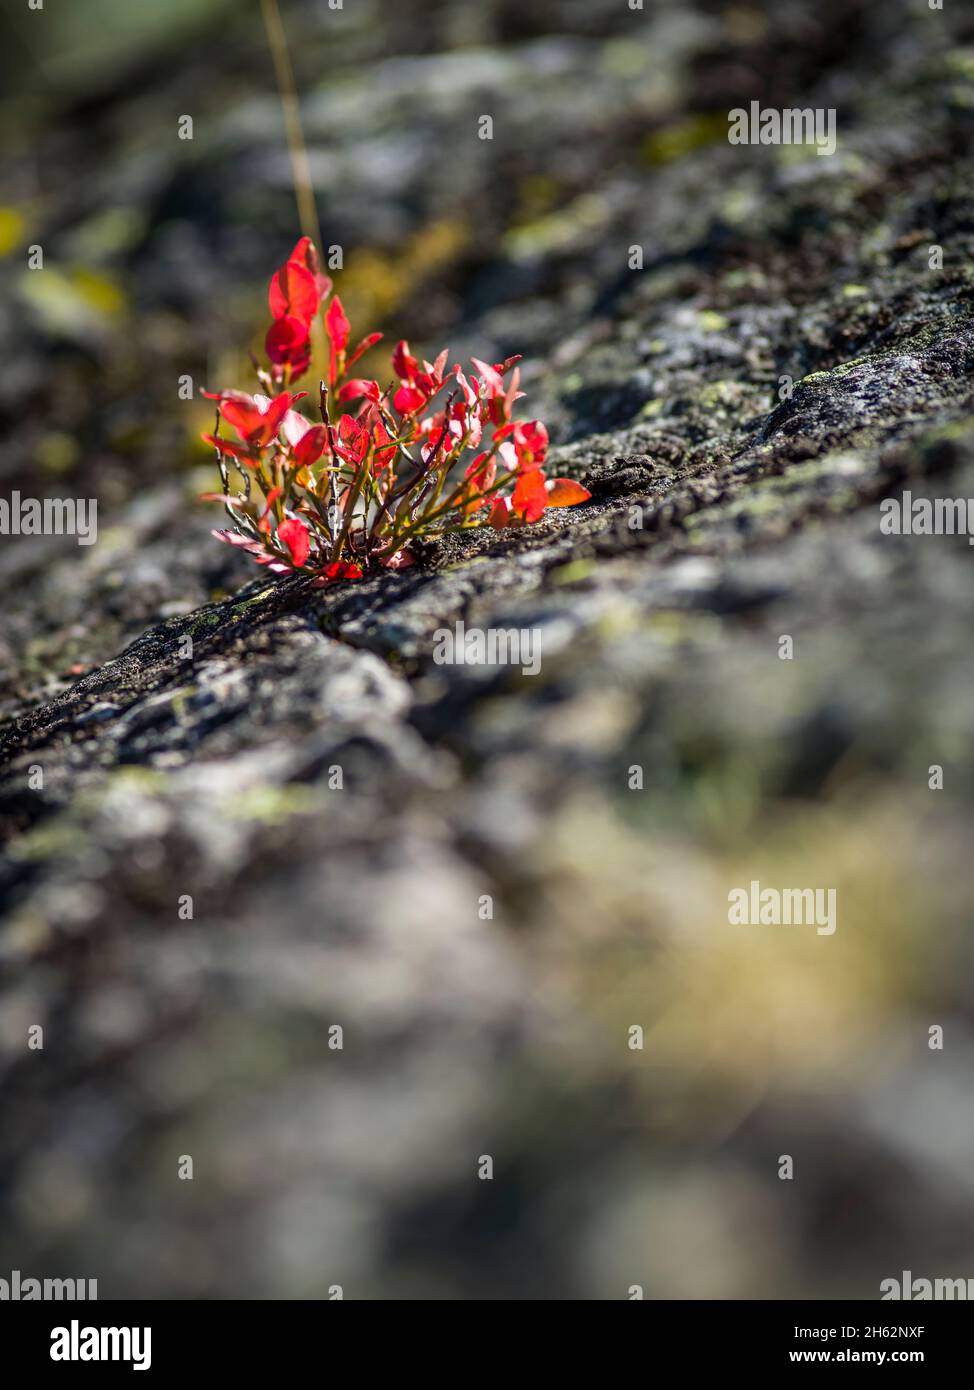 pianta piccola con foglie rosse su pietra Foto Stock